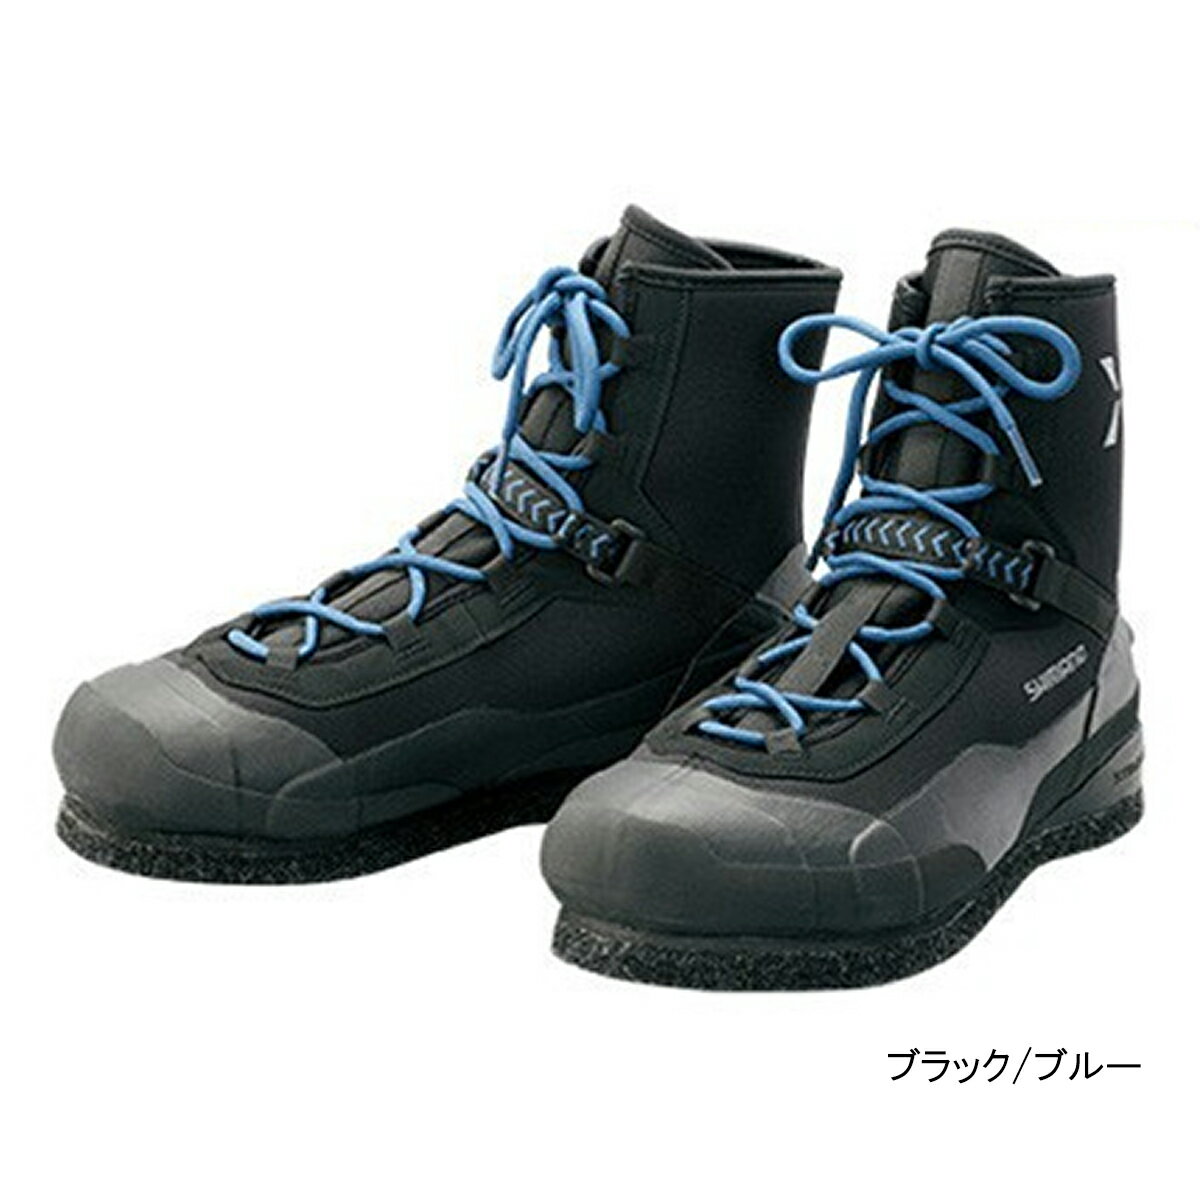 【楽天市場】シマノ シマノ SHIMANO FS-280S XEFO・ソルトウェーディングシューズ 28 黒青 ブラック/ブルー 65114